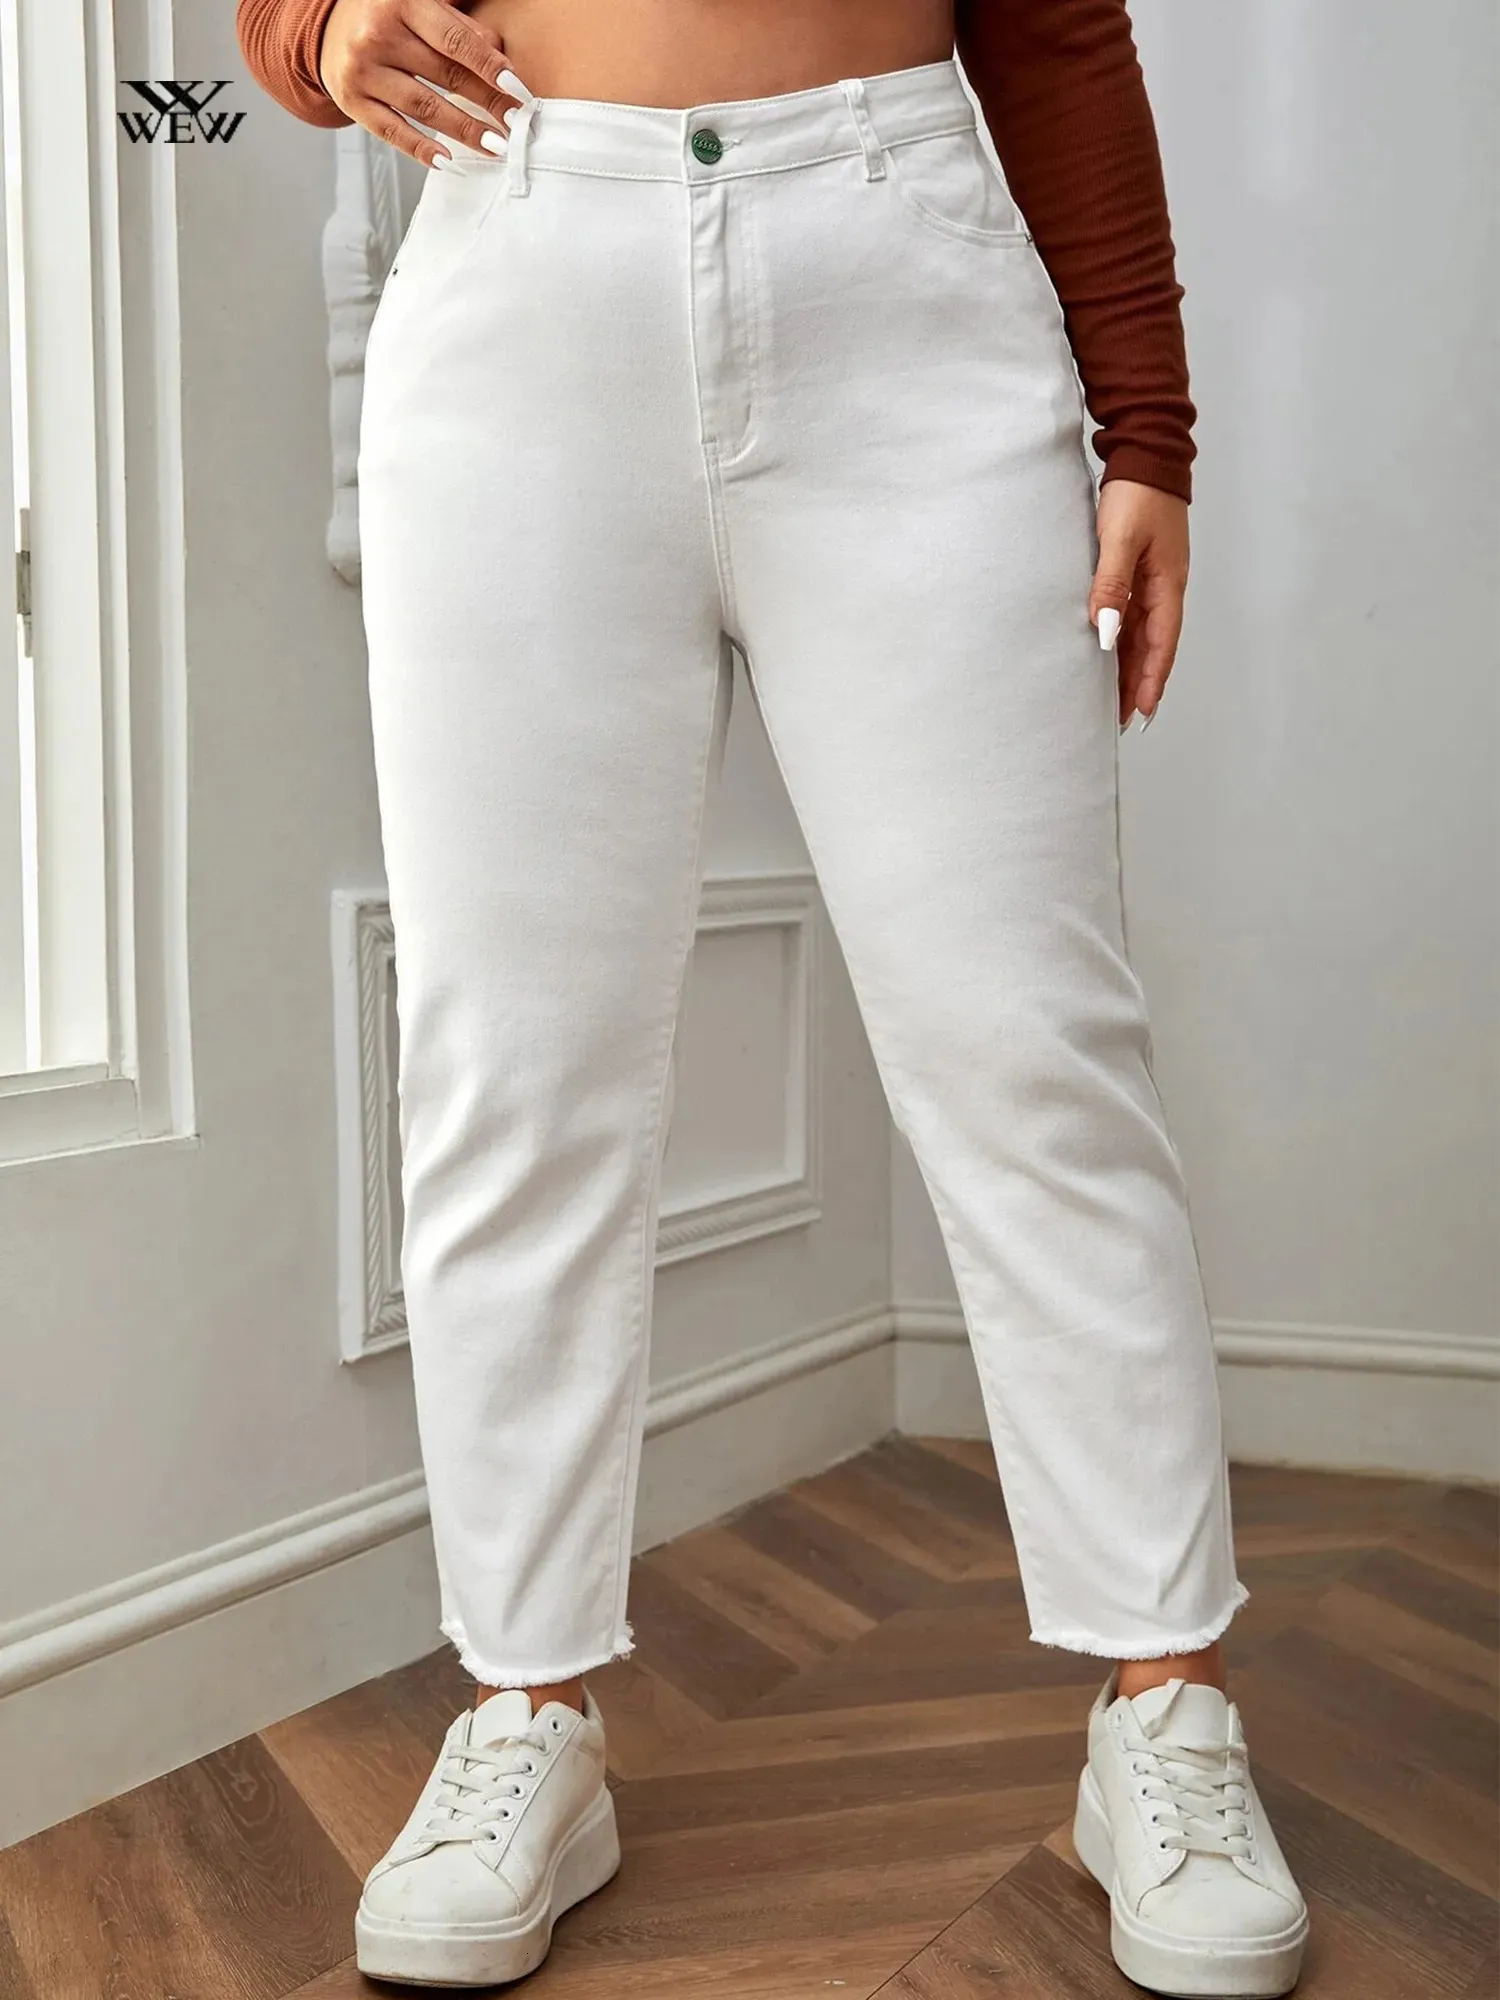 Pantaloni taglie forti da donna Jeans bianchi taglie forti per donna Taglio dritto Primavera Autunno Lunghezza intera Pantaloni a vita alta elasticizzati in denim da 100 kg 231011